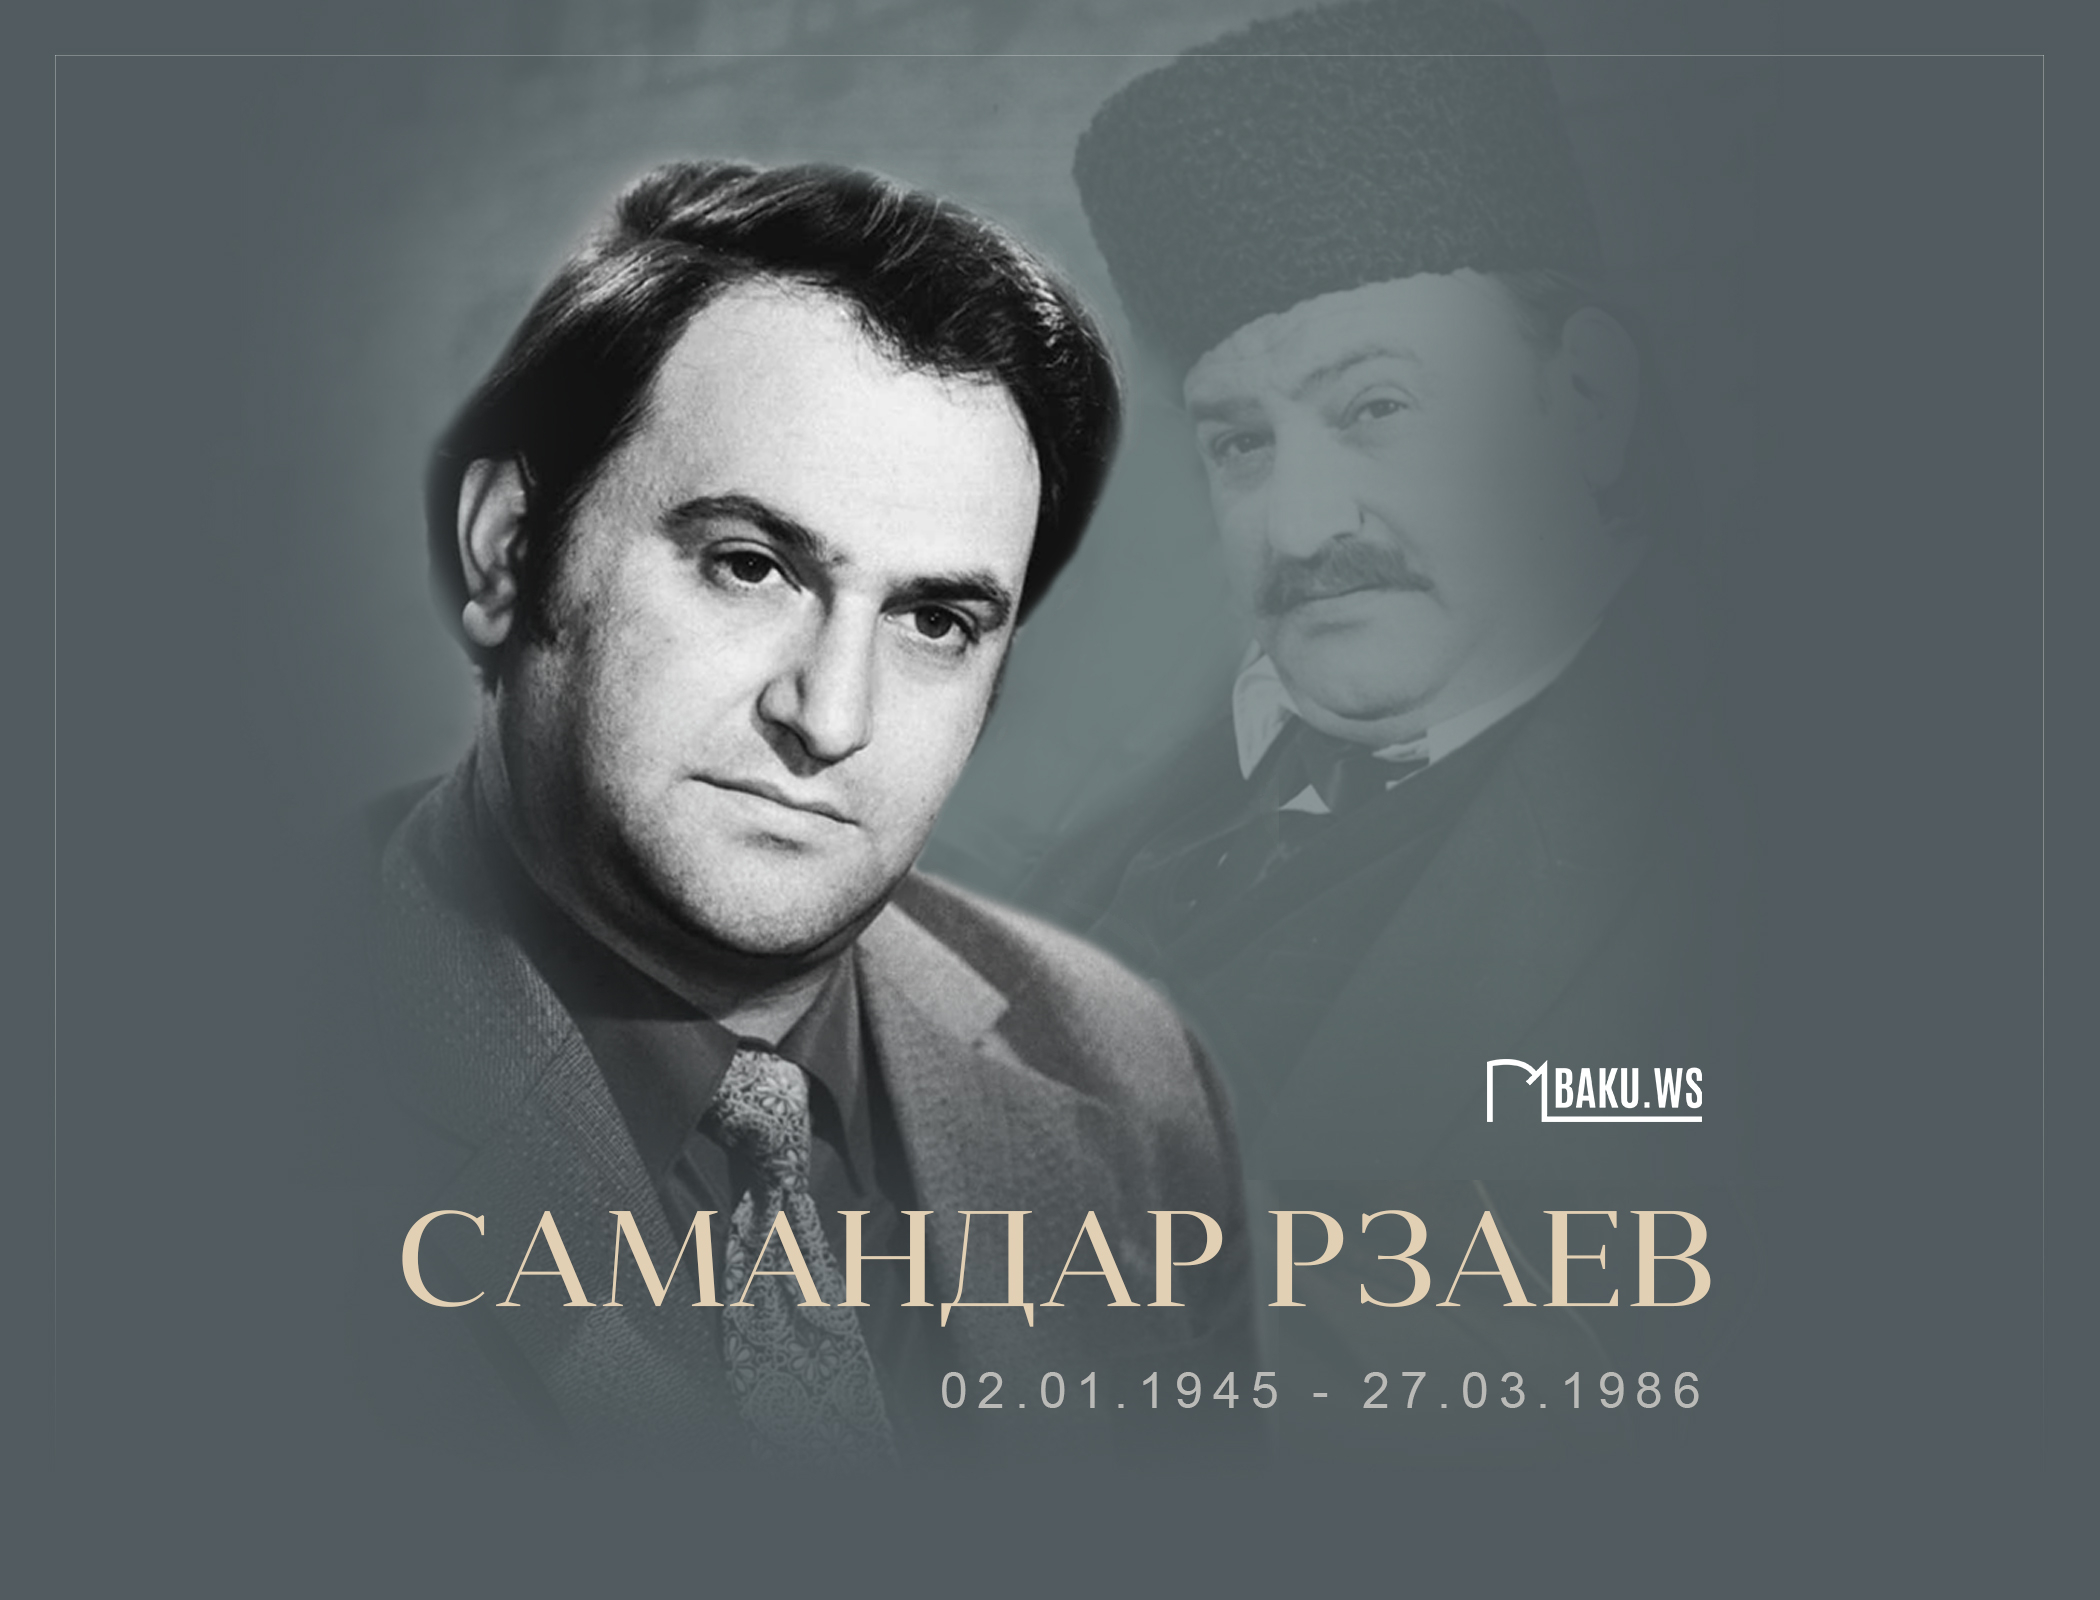 Сегодня день памяти азербайджанского актера Самандара Рзаева